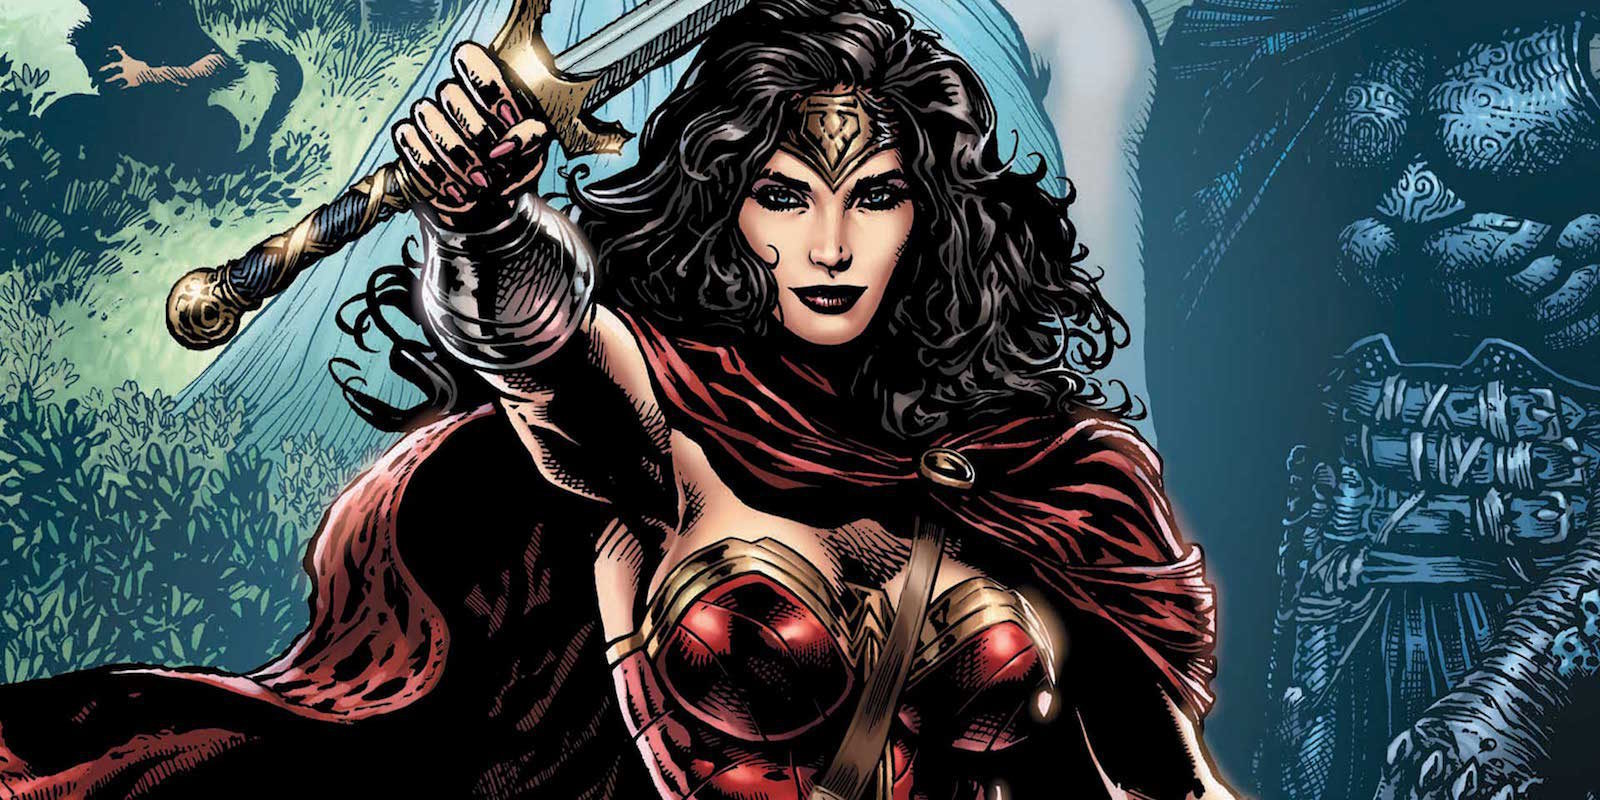 DC confirma que 'Wonder Woman' es bisexual